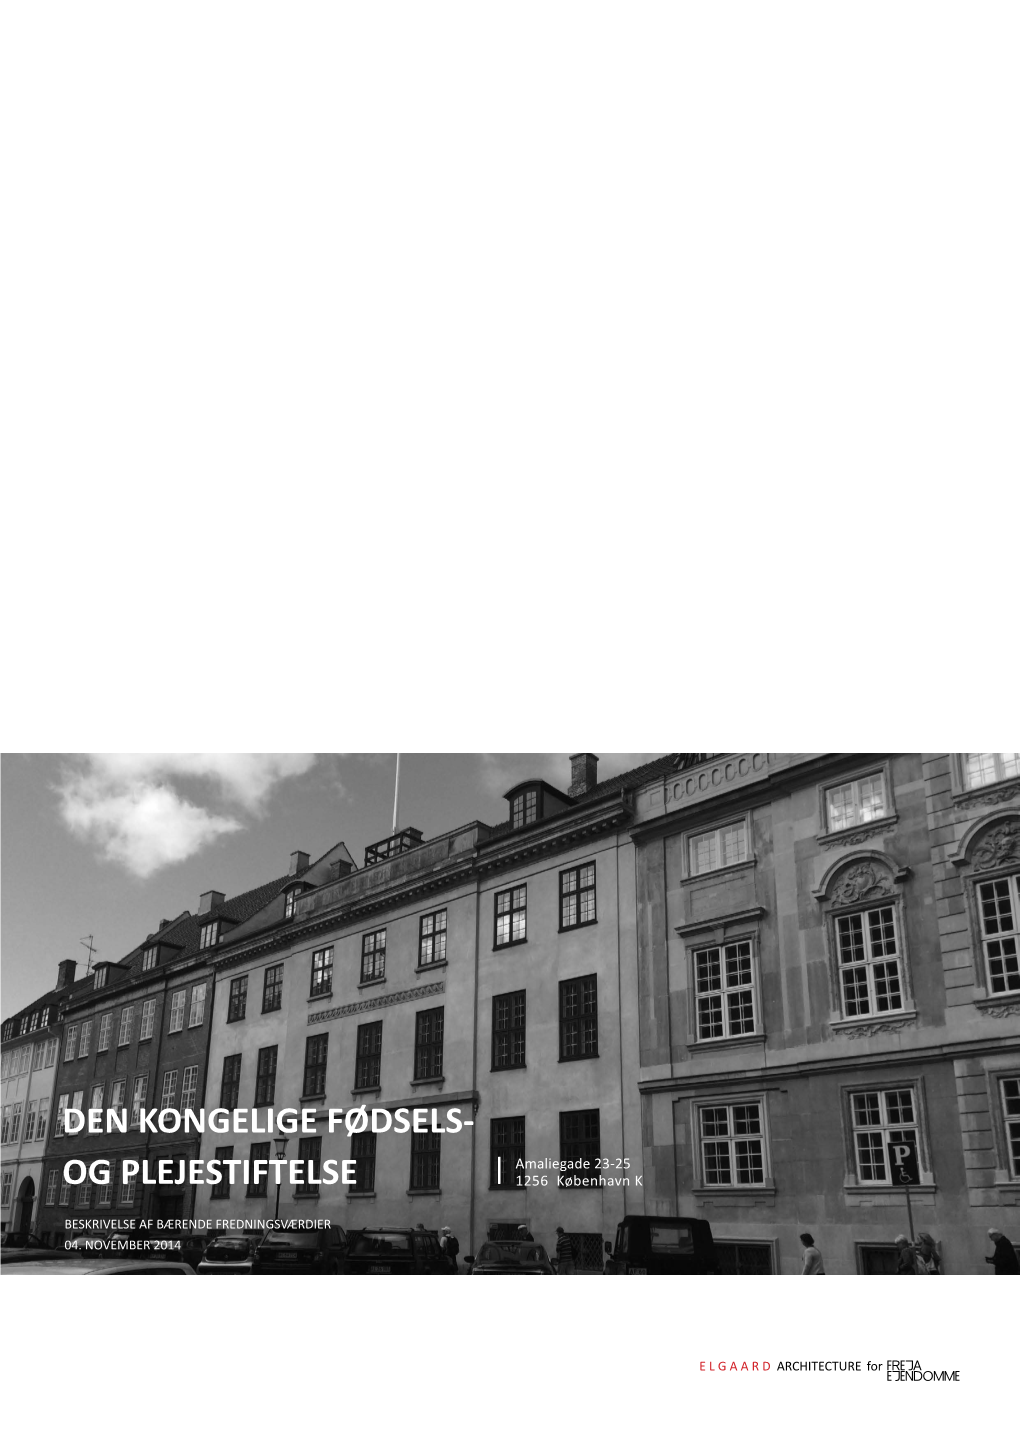 Den Kongelige Fødsels- Og Plejestiftelse Ligger I Hjertet Af Frederiksstaden Københavns Nordvestlige Bydel Og Hjemsted for Den Danske Kongefamilie